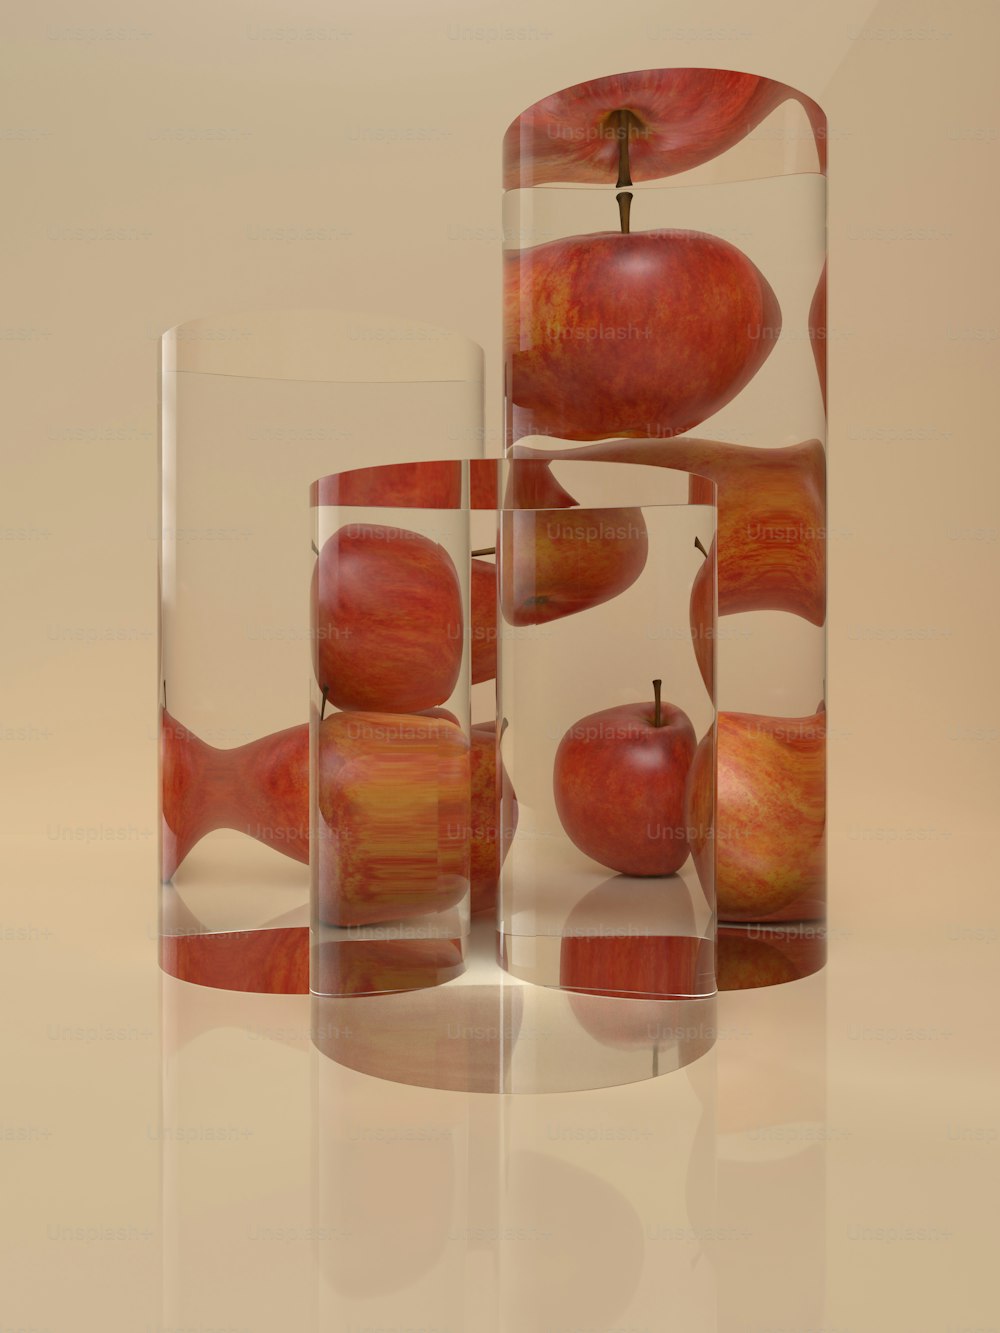 um vaso de vidro com maçãs dentro dele